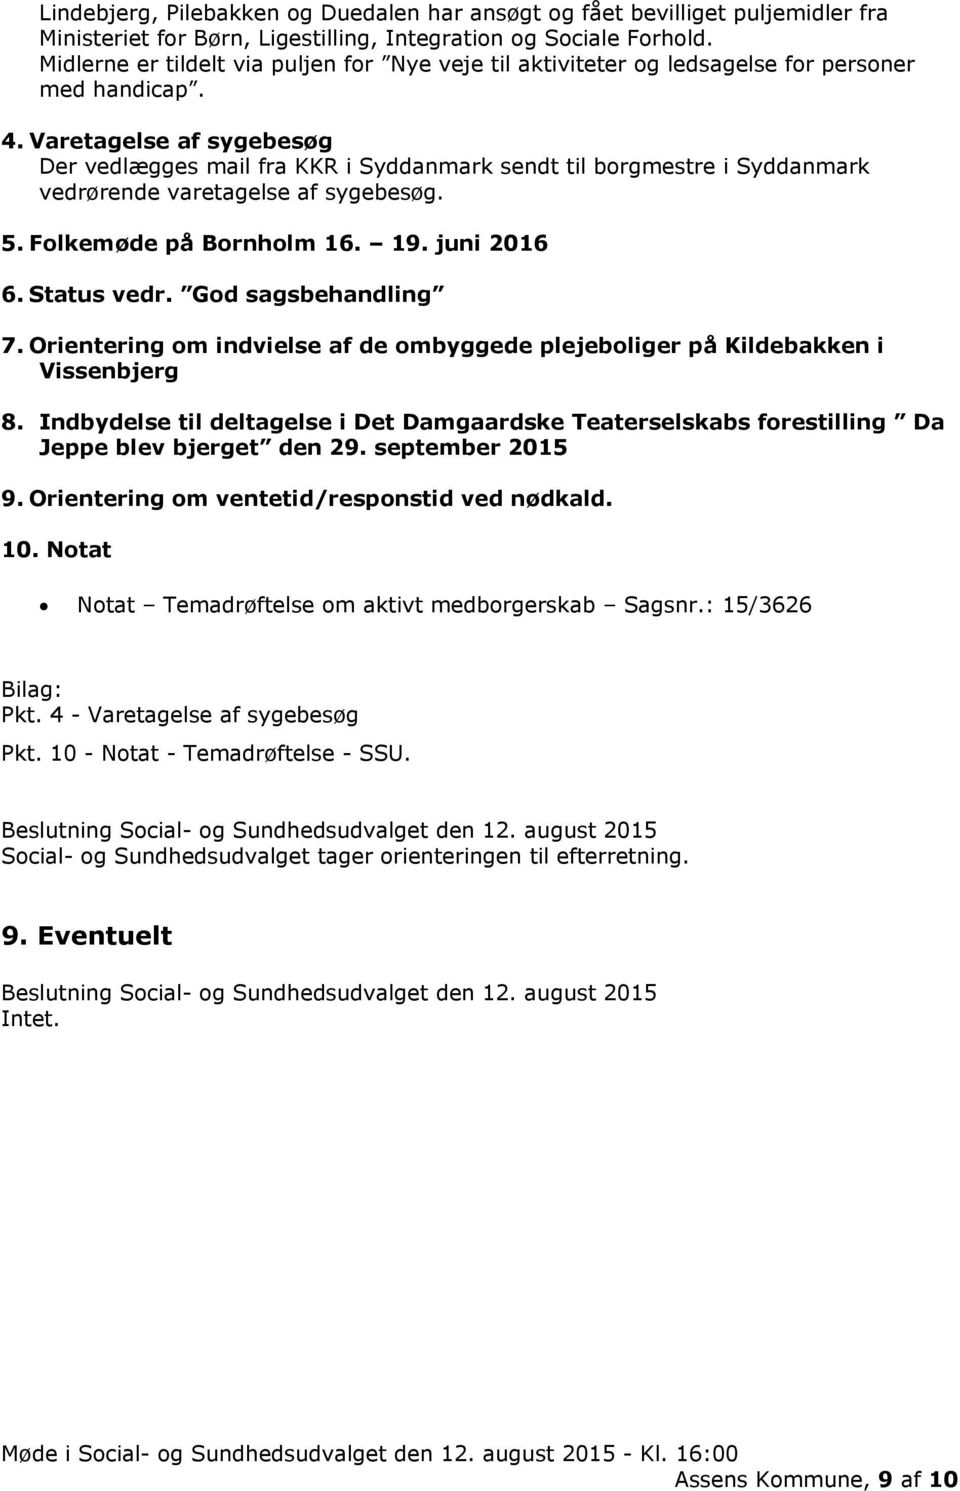 Varetagelse af sygebesøg Der vedlægges mail fra KKR i Syddanmark sendt til borgmestre i Syddanmark vedrørende varetagelse af sygebesøg. 5. Folkemøde på Bornholm 16. 19. juni 2016 6. Status vedr.